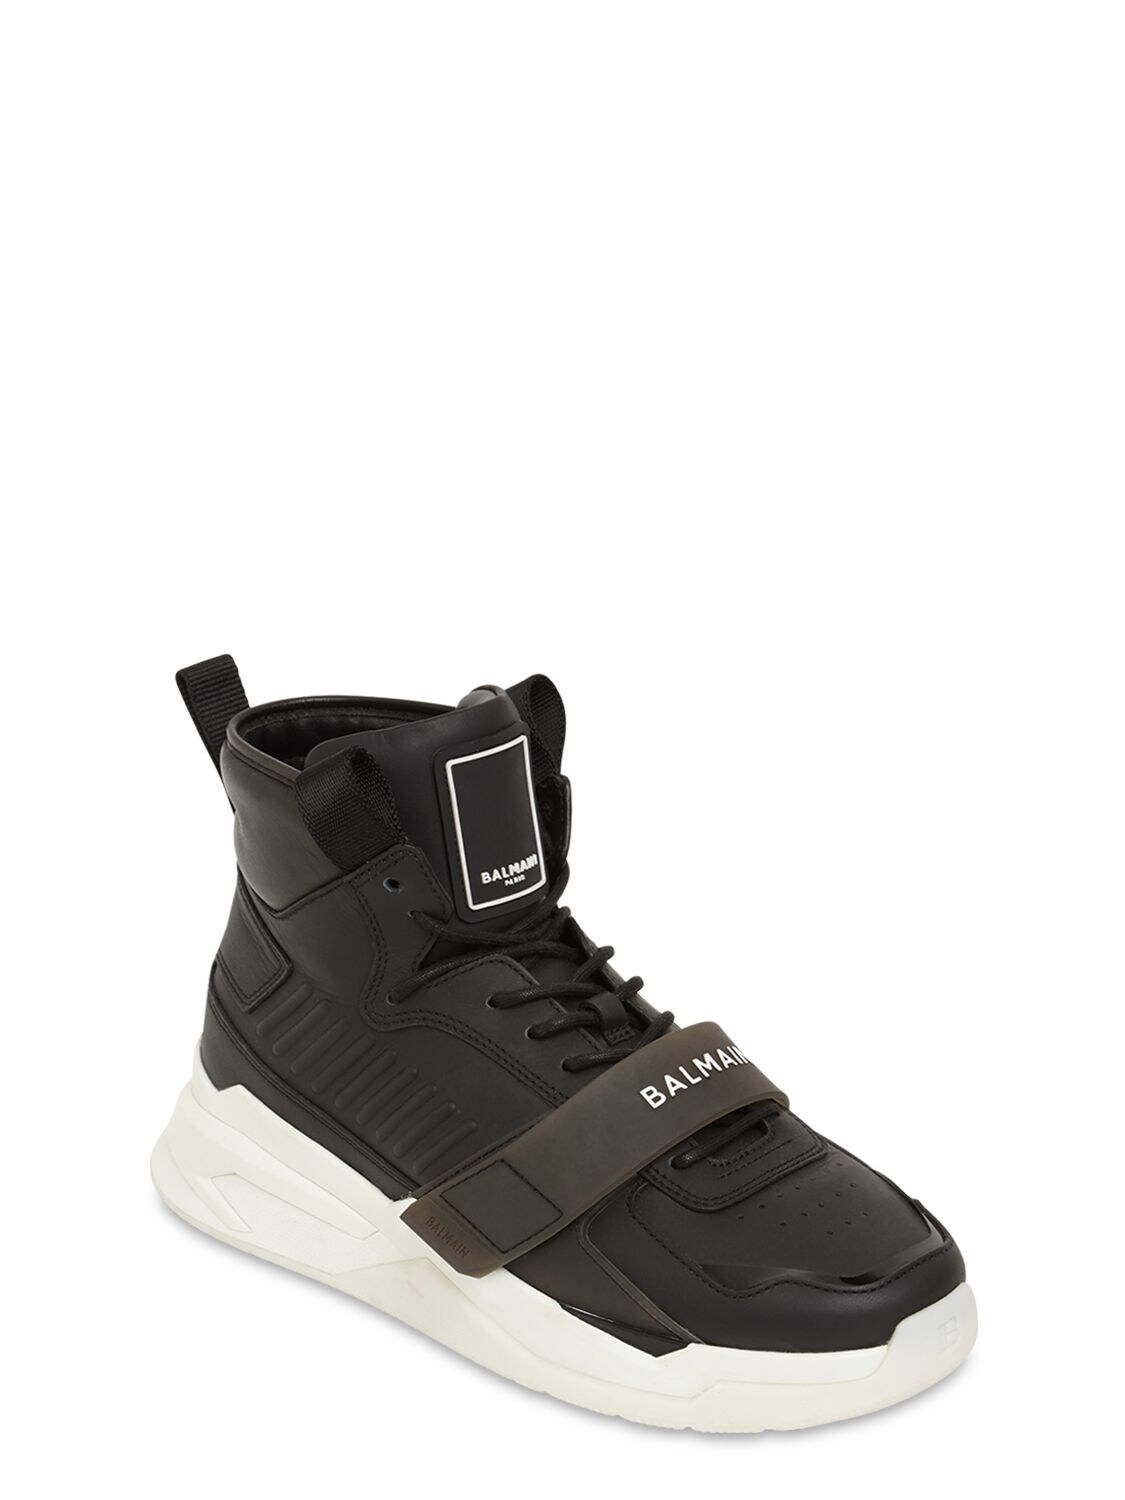 Balmain Multi-panel High-top Sneakers In Black | ModeSens